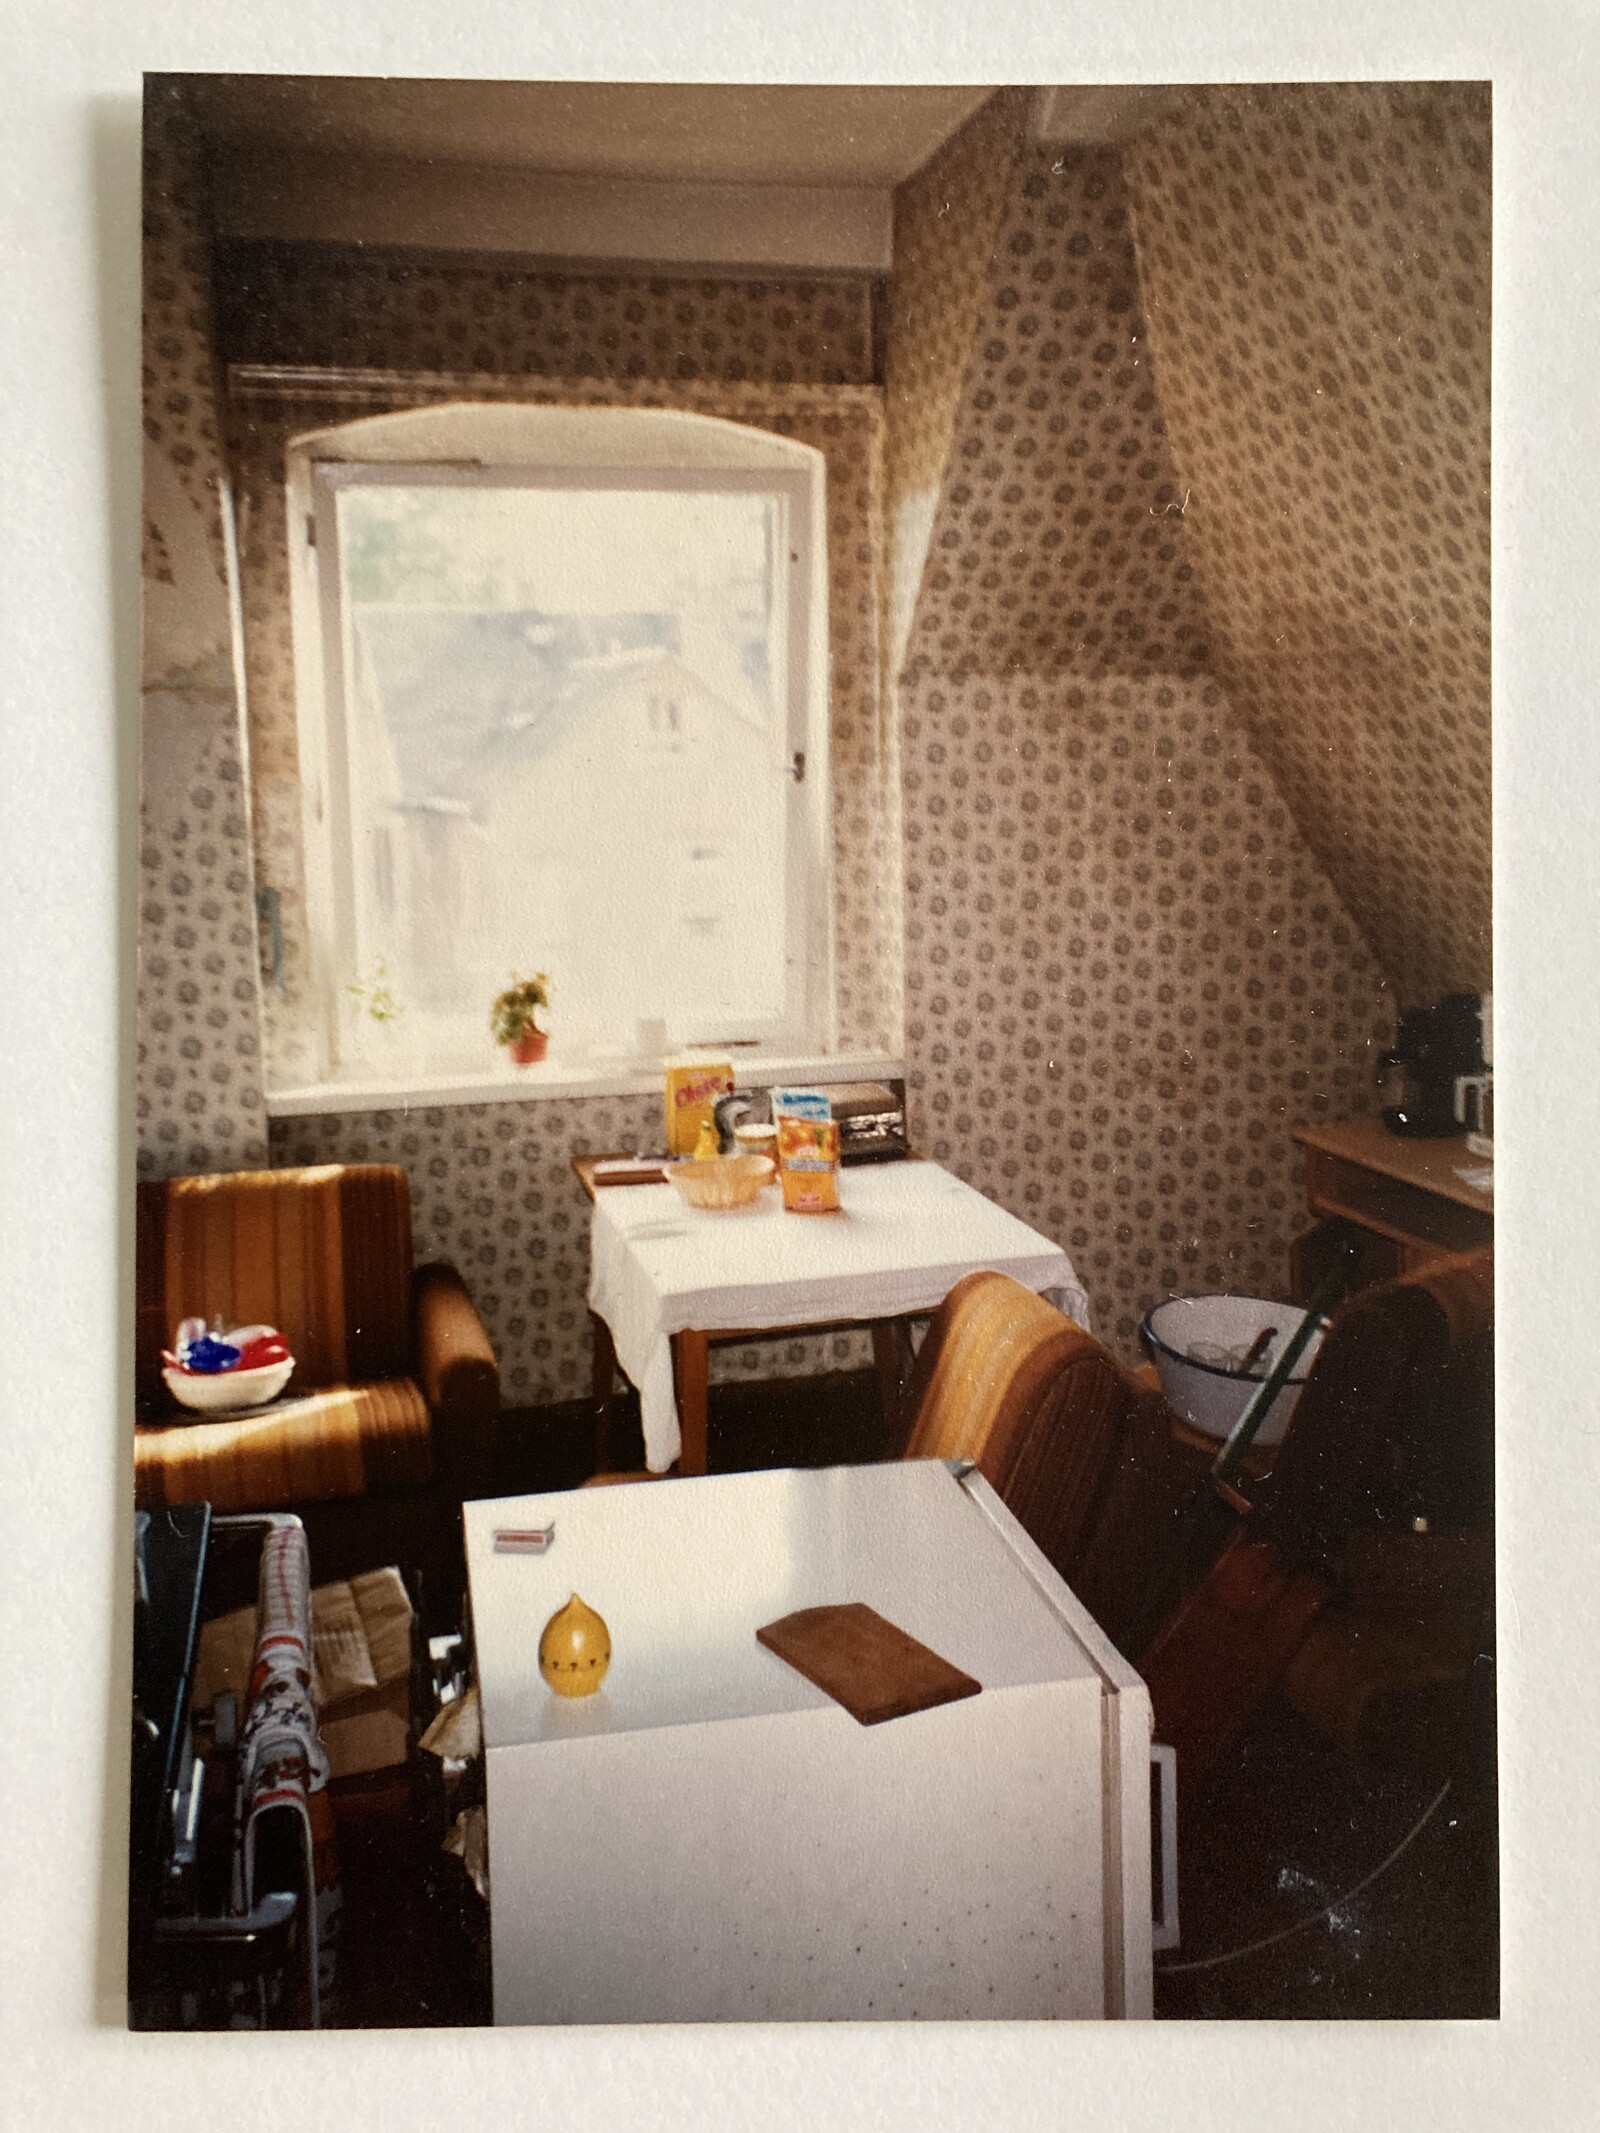 Küche in der WG Breitscheidt-Straße 29, 1994/1995, Bild: Martin Kohlhaas